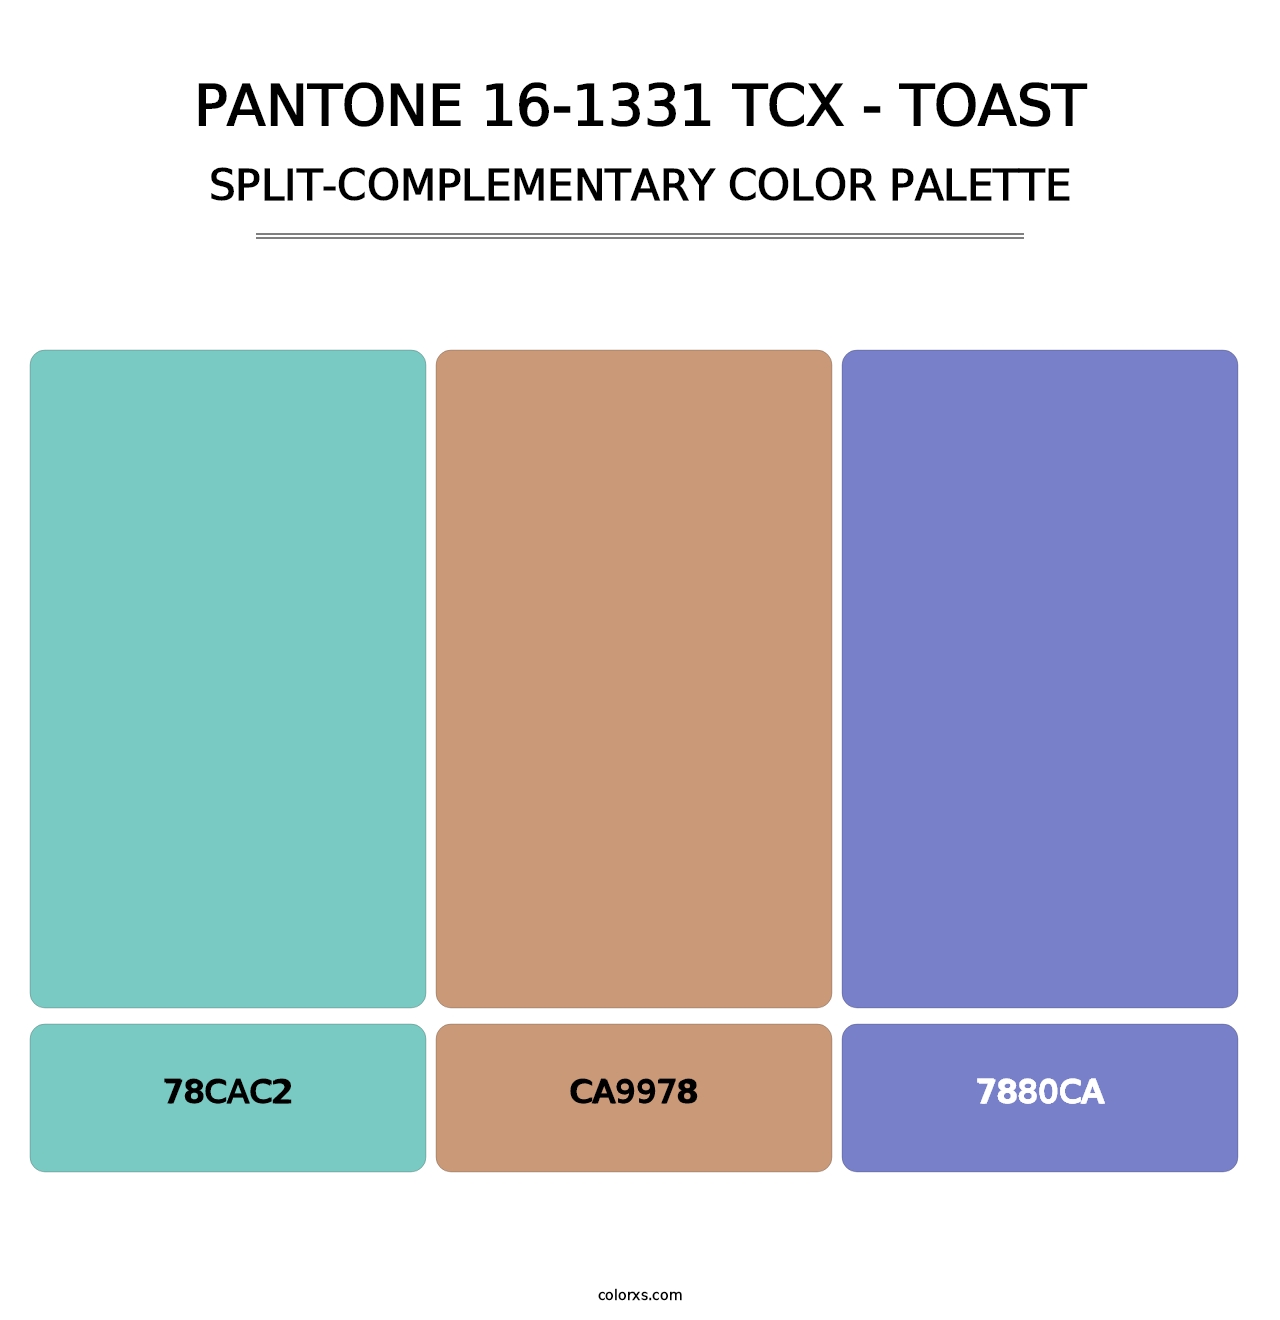 PANTONE 16-1331 TCX - Toast - Split-Complementary Color Palette